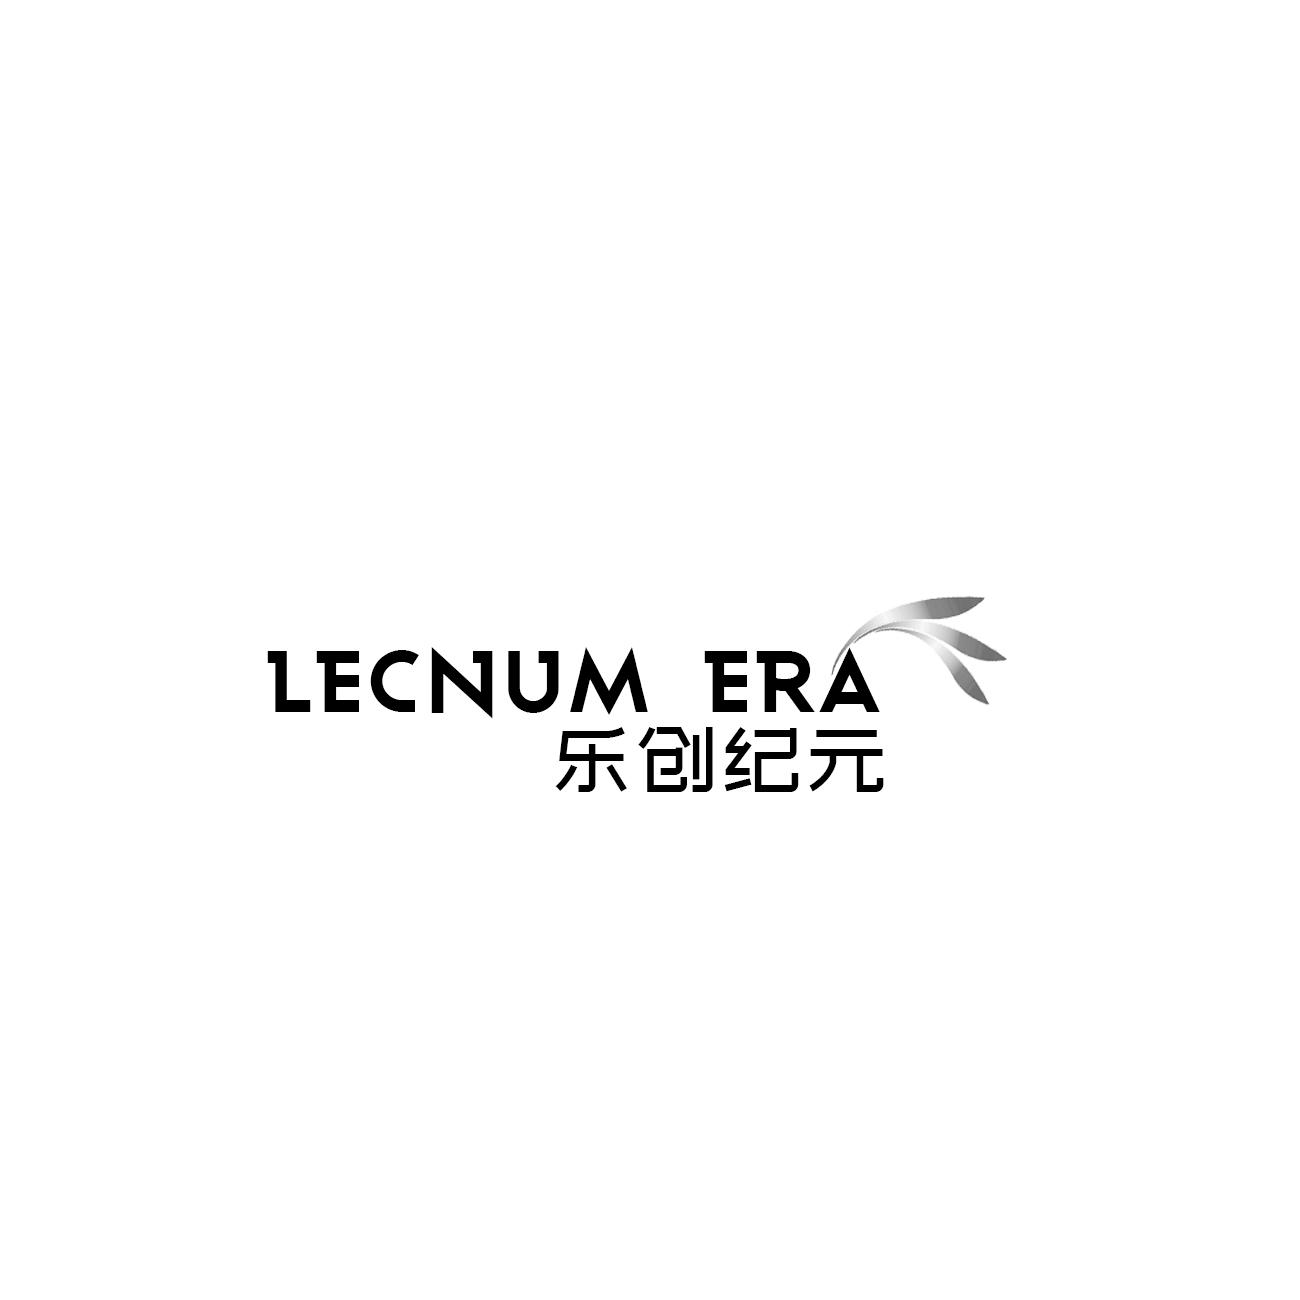 09类-科学仪器LECNUM ERA 乐创纪元商标转让